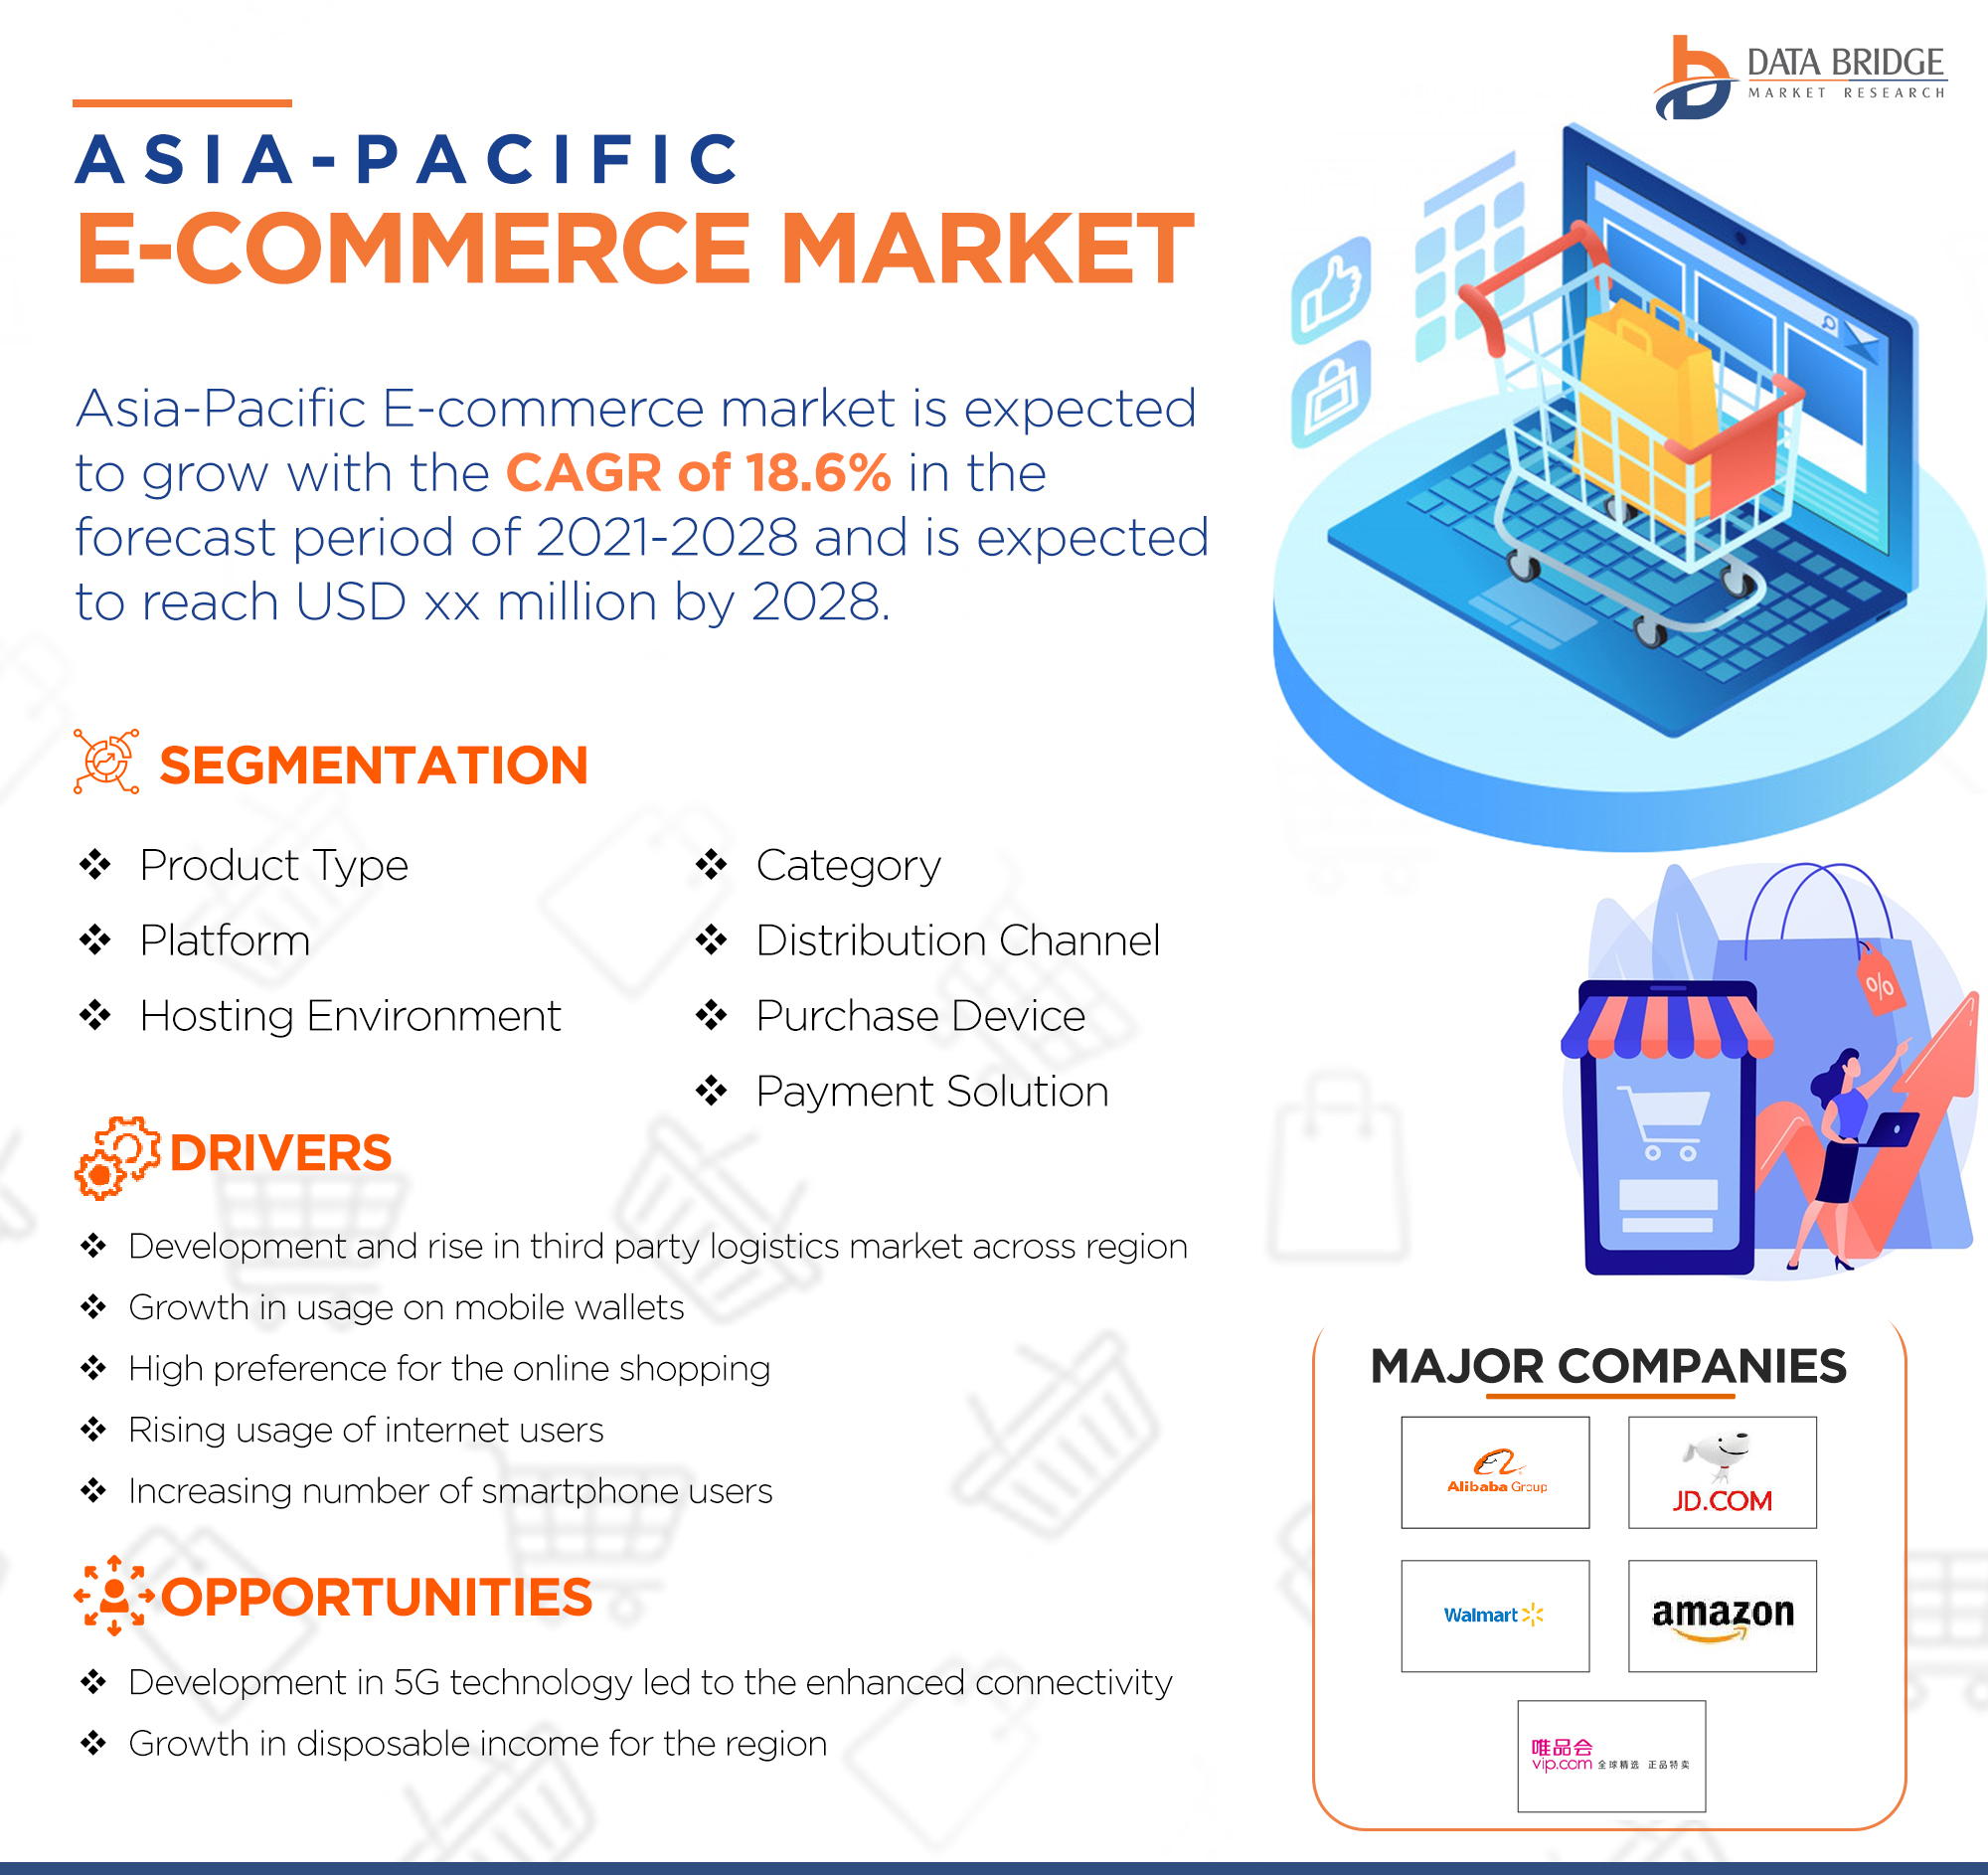 Asia-Pacific E-Commerce Market